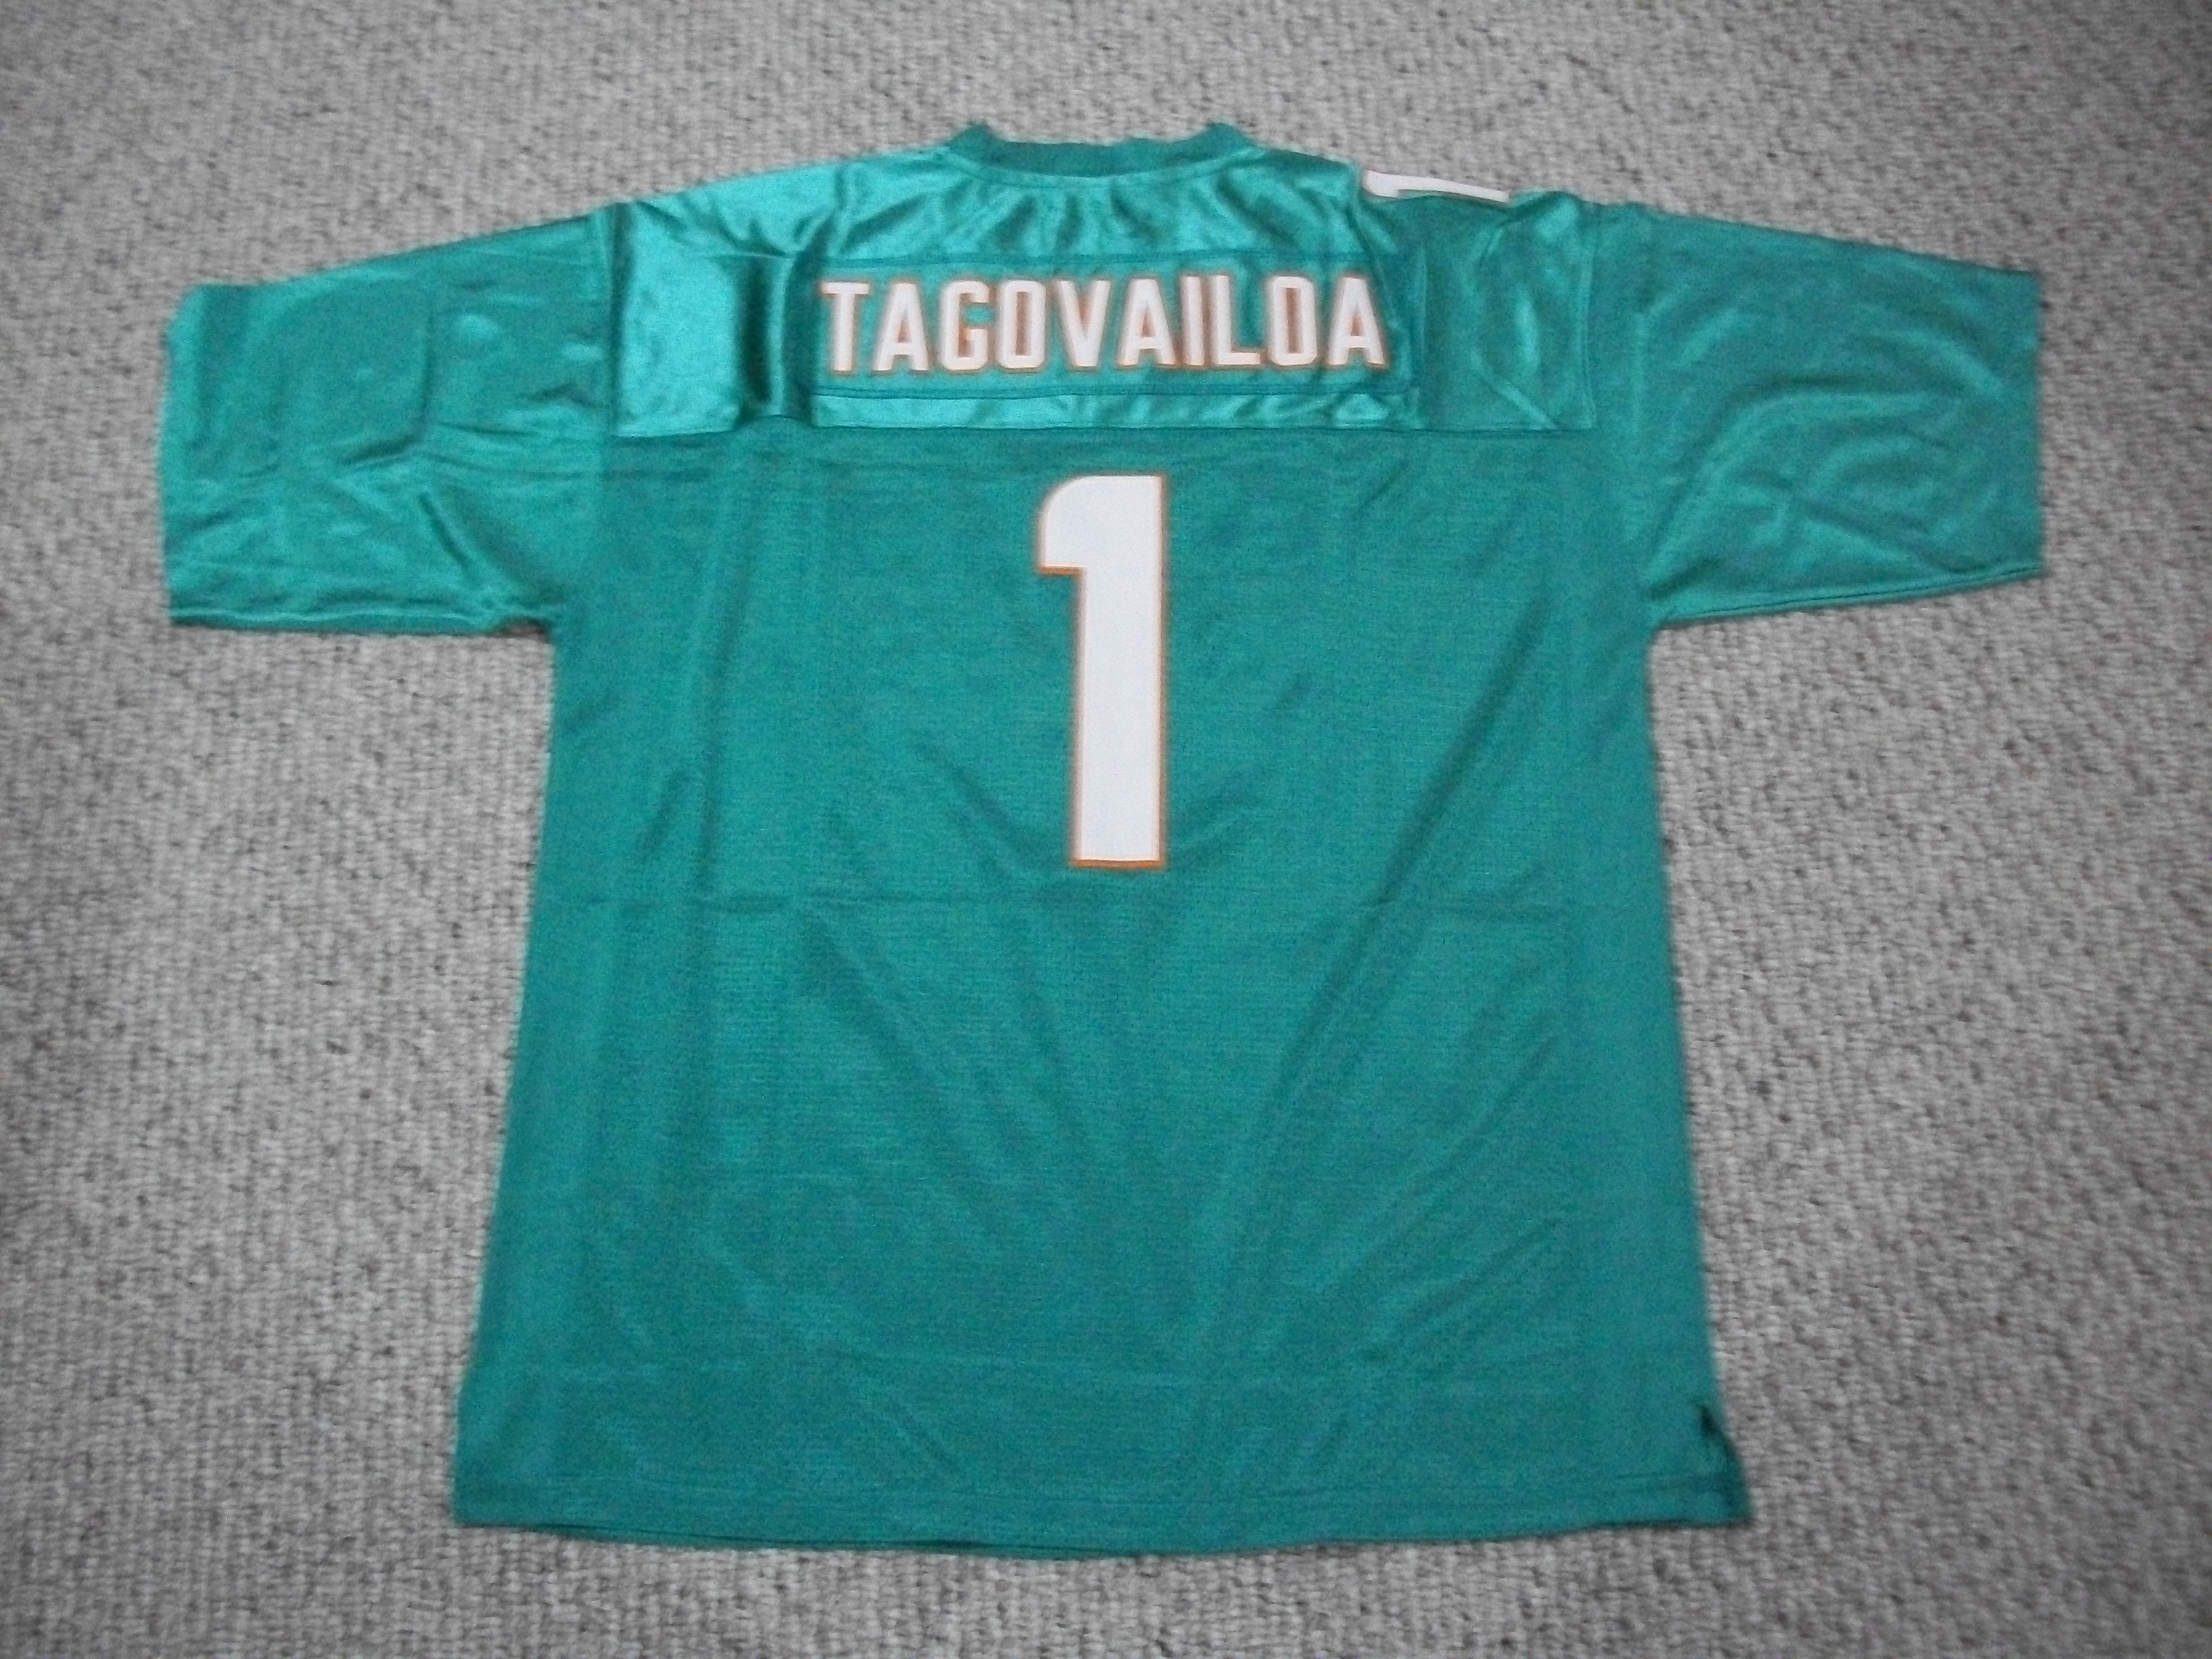 Unsigned Tua Tagovailoa Jersey #1 Miami Custom Stitched Teal